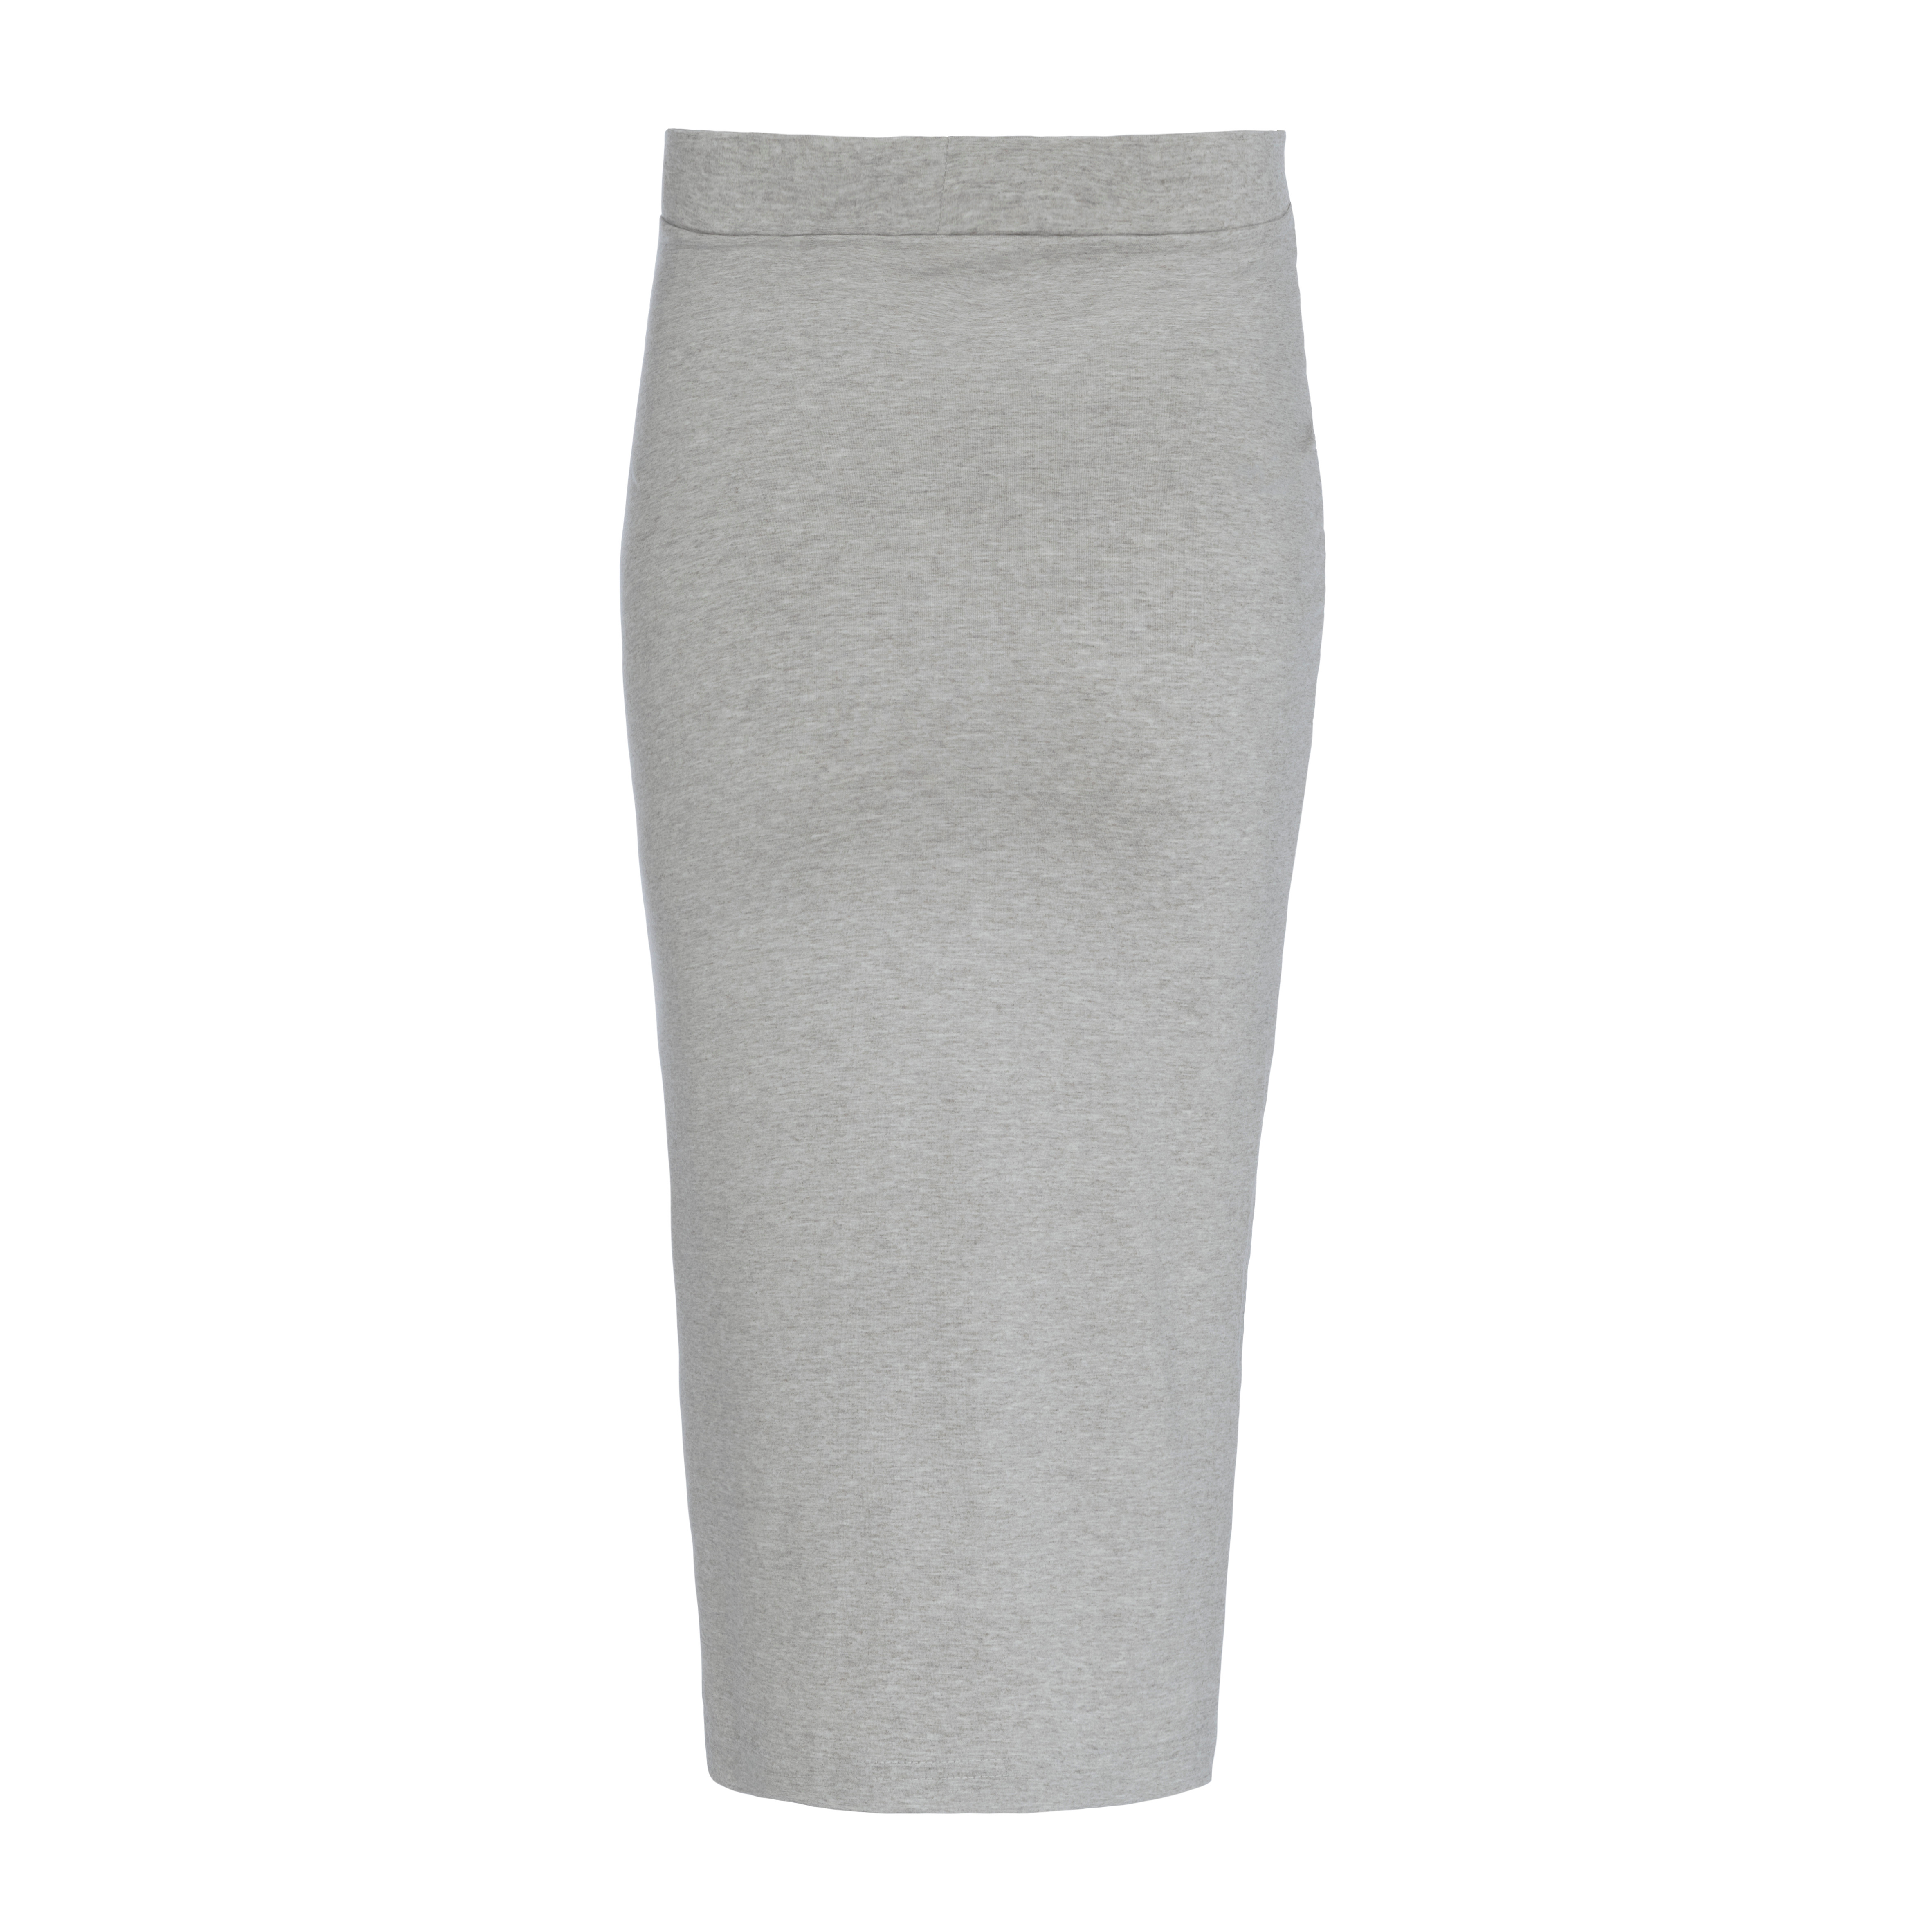 Maternity skirt Glow dusty grey - XL